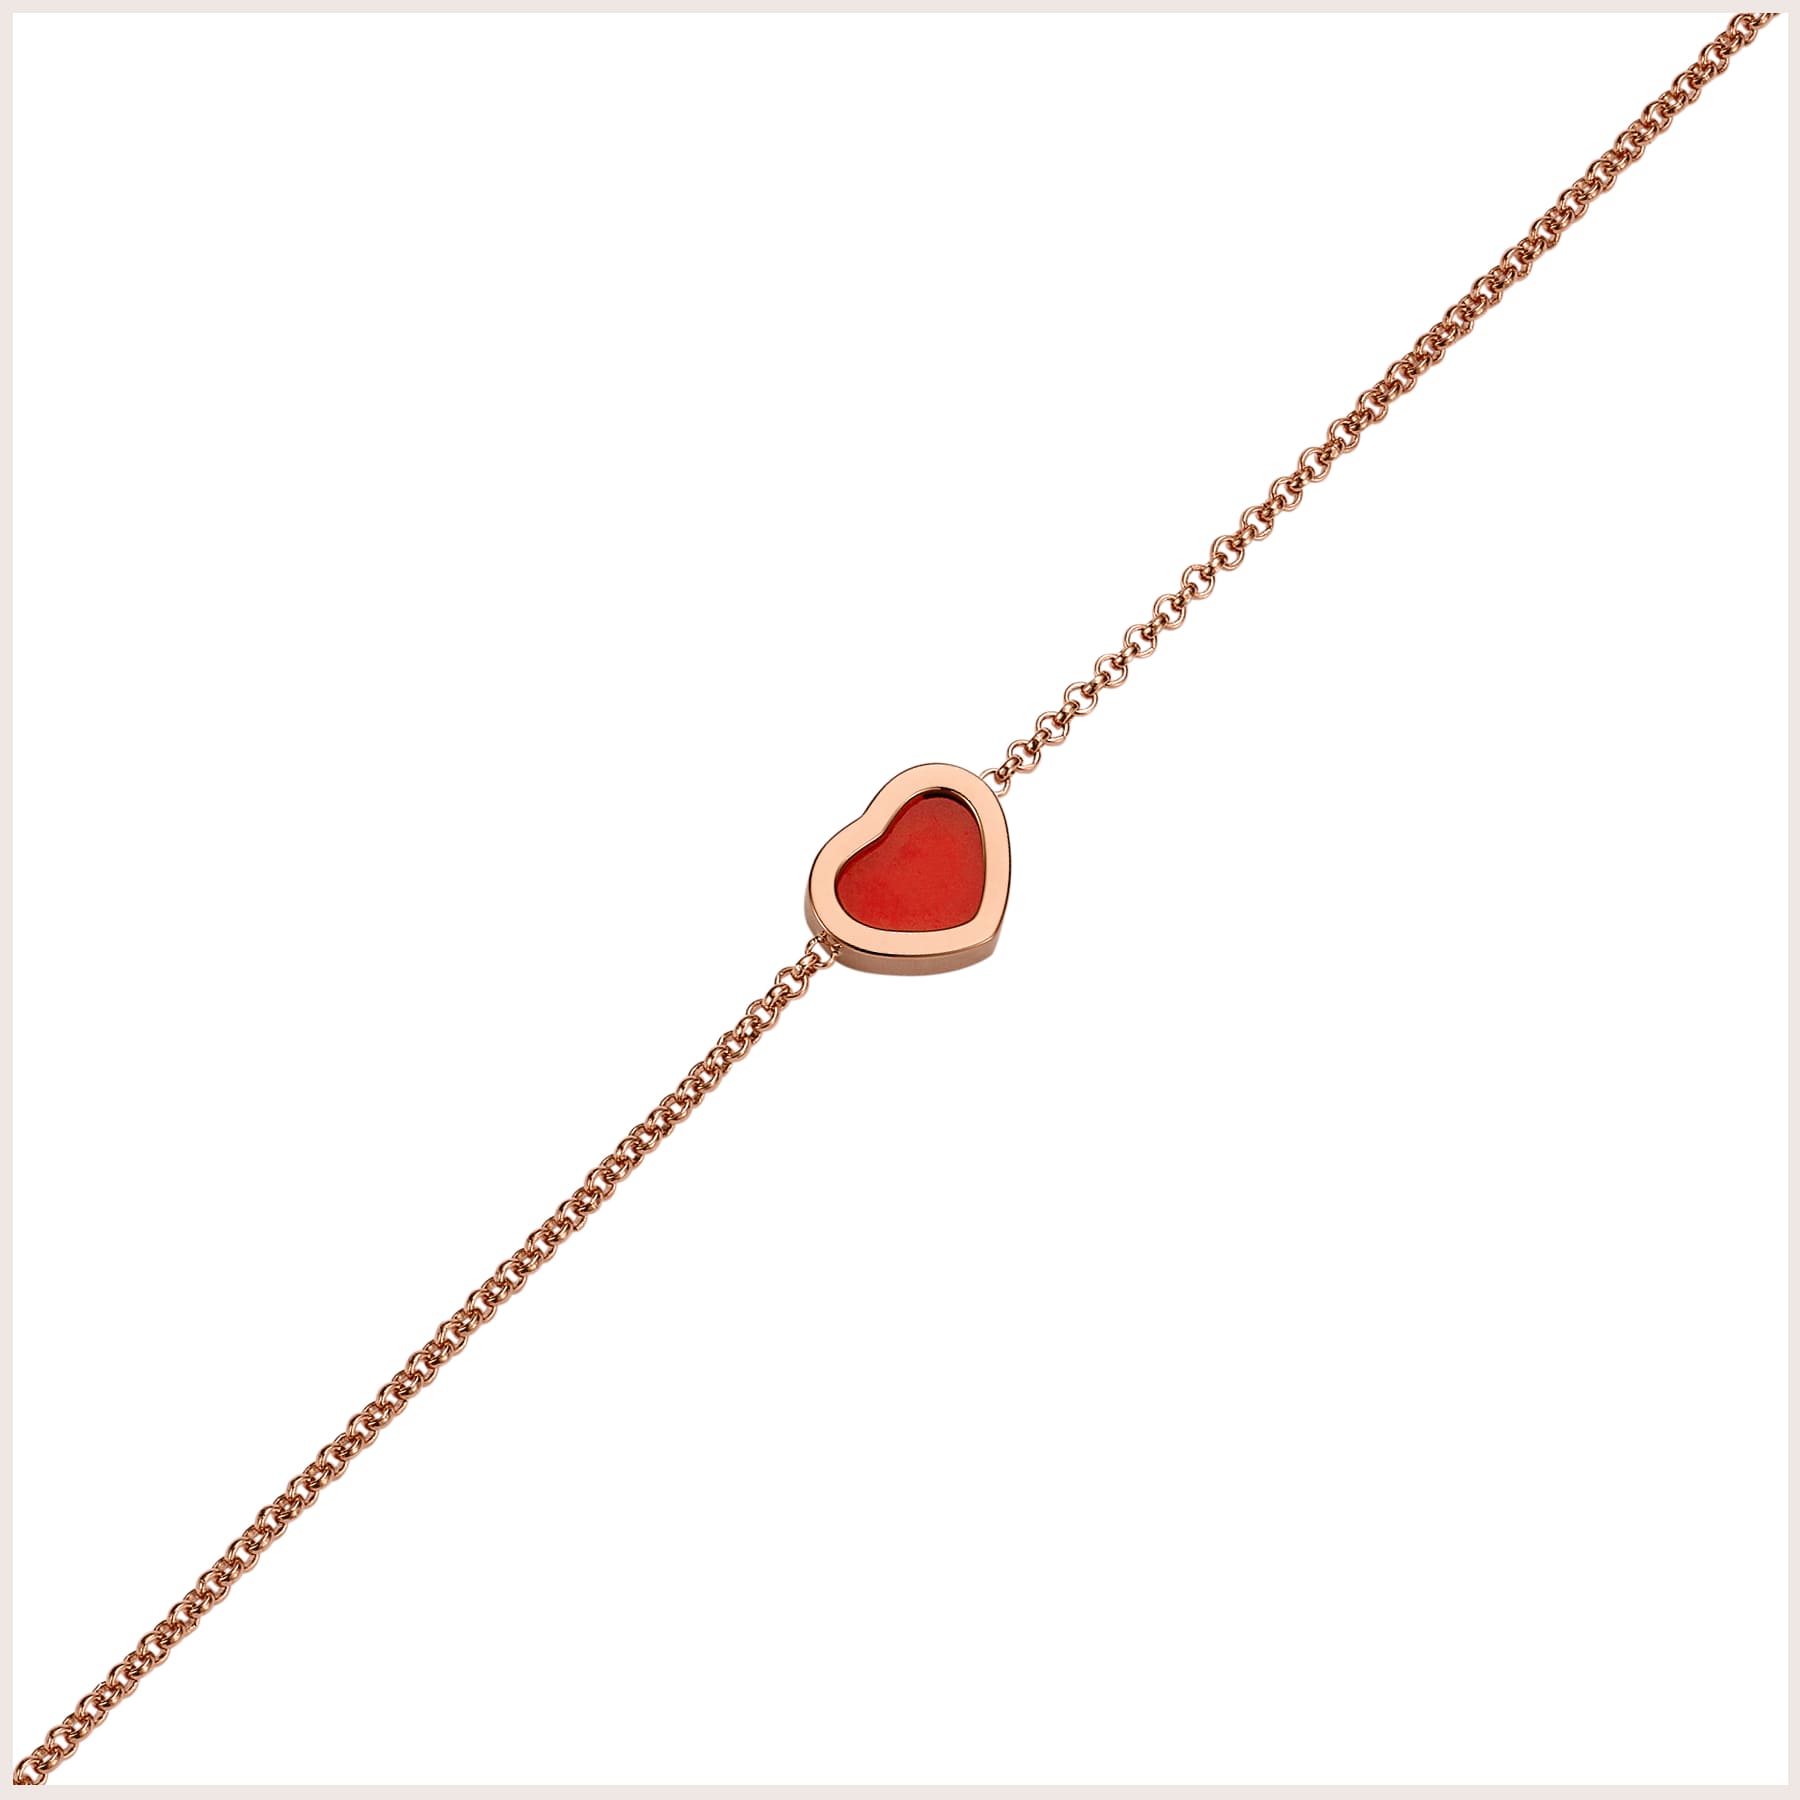 Chopard My Happy Hearts Armband in Rosegold mit Schmuckelement aus rotem Karneol in Herzform von hinten